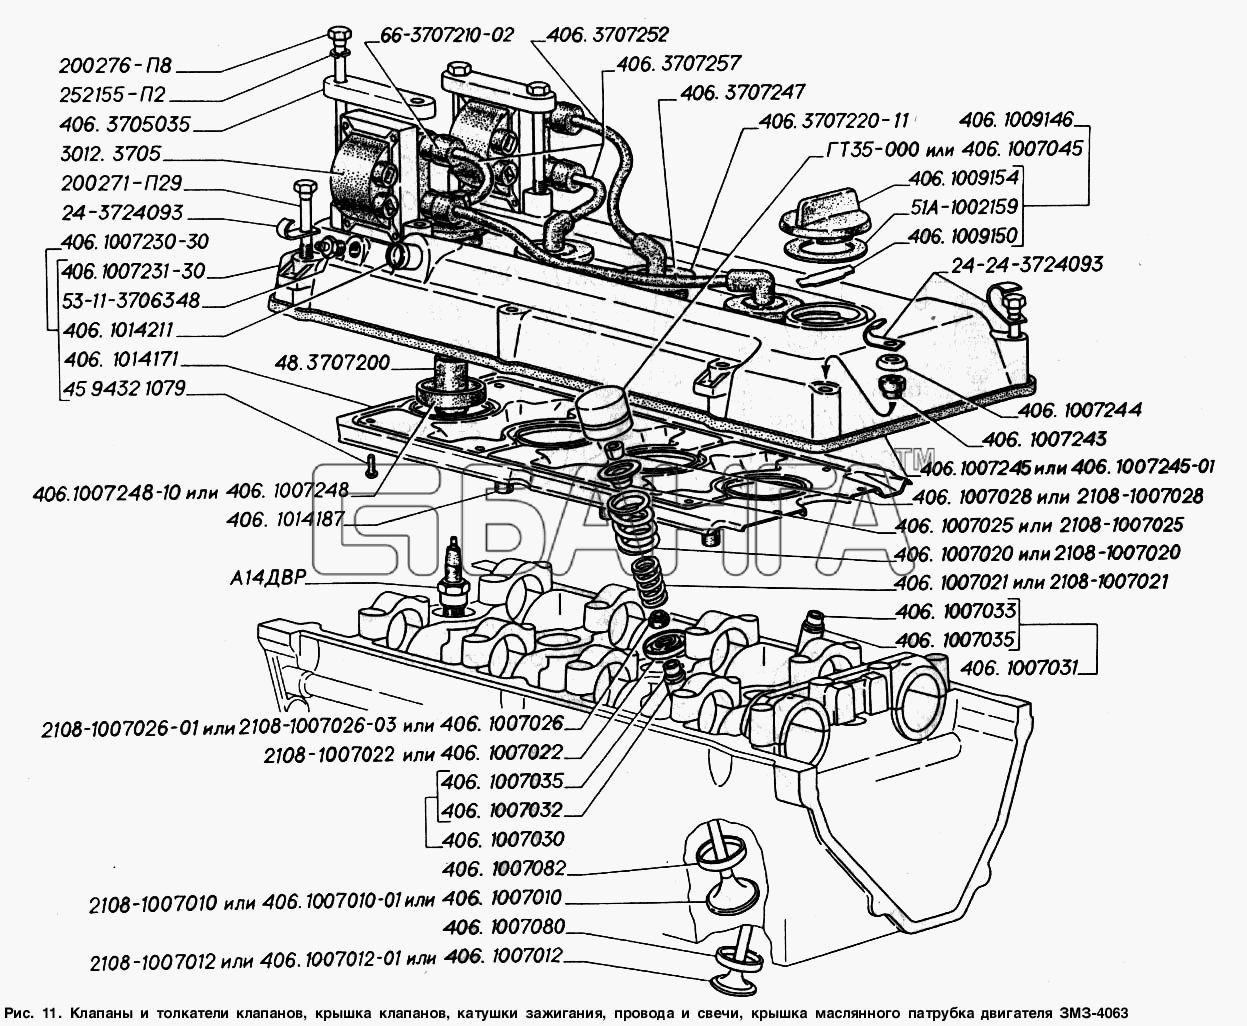 ГАЗ ГАЗ-2217 (Соболь) Схема Клапаны и толкатели клапанов крышка